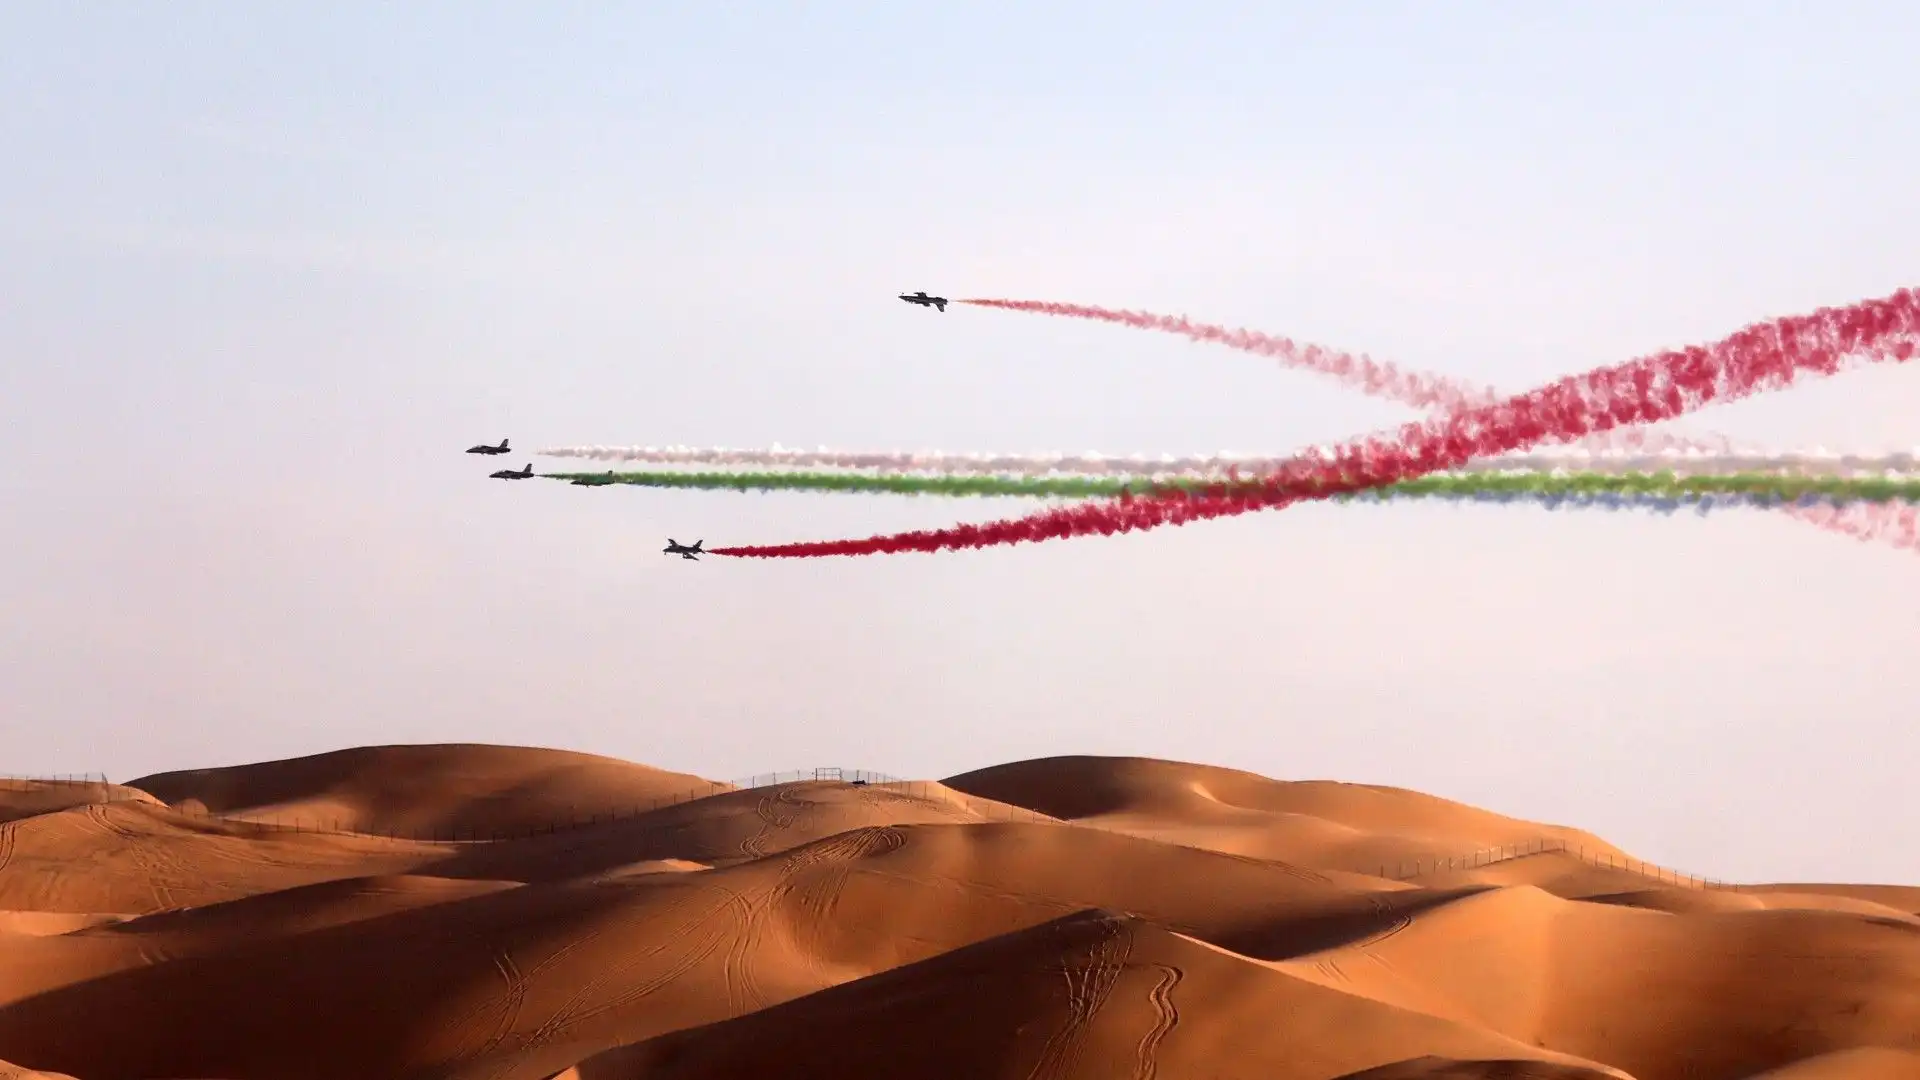 In cielo la squadra di volo acrobatico d'élite degli Emirati Arabi Uniti "Al Fursan"